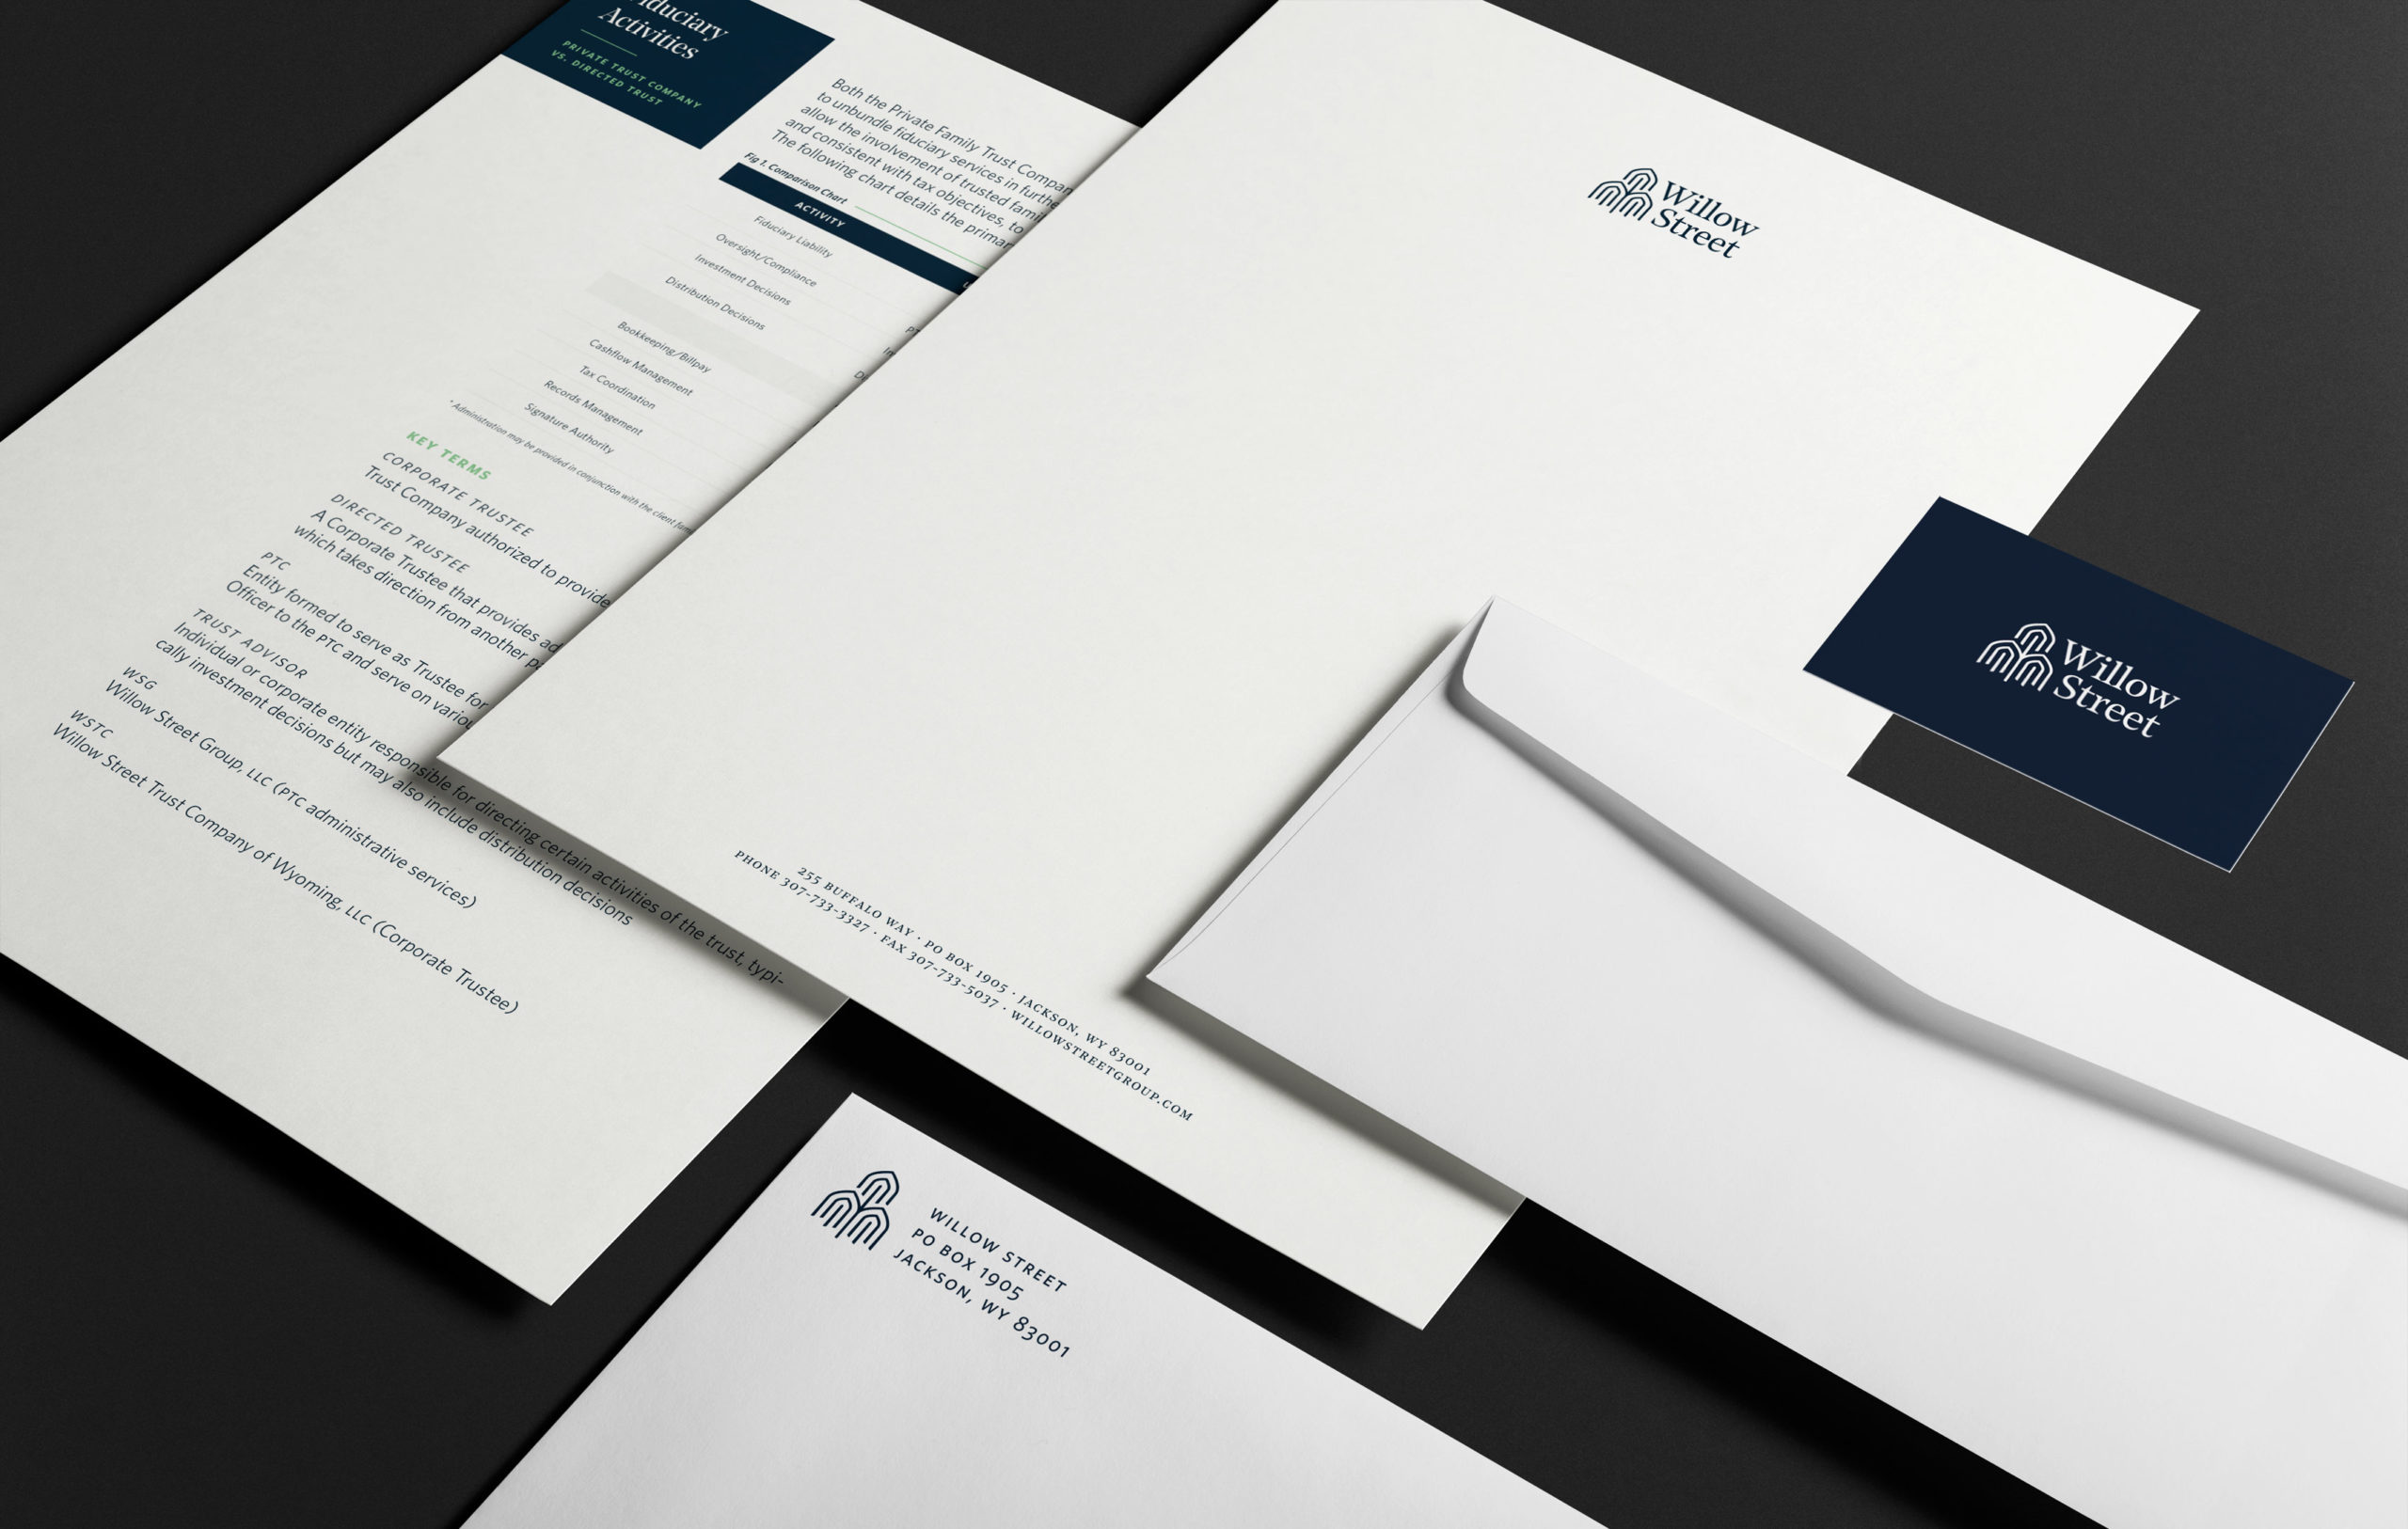 New-Thought-Willow-Street-Group-Branding-Letterhead-and-Envelopes-fullscreen